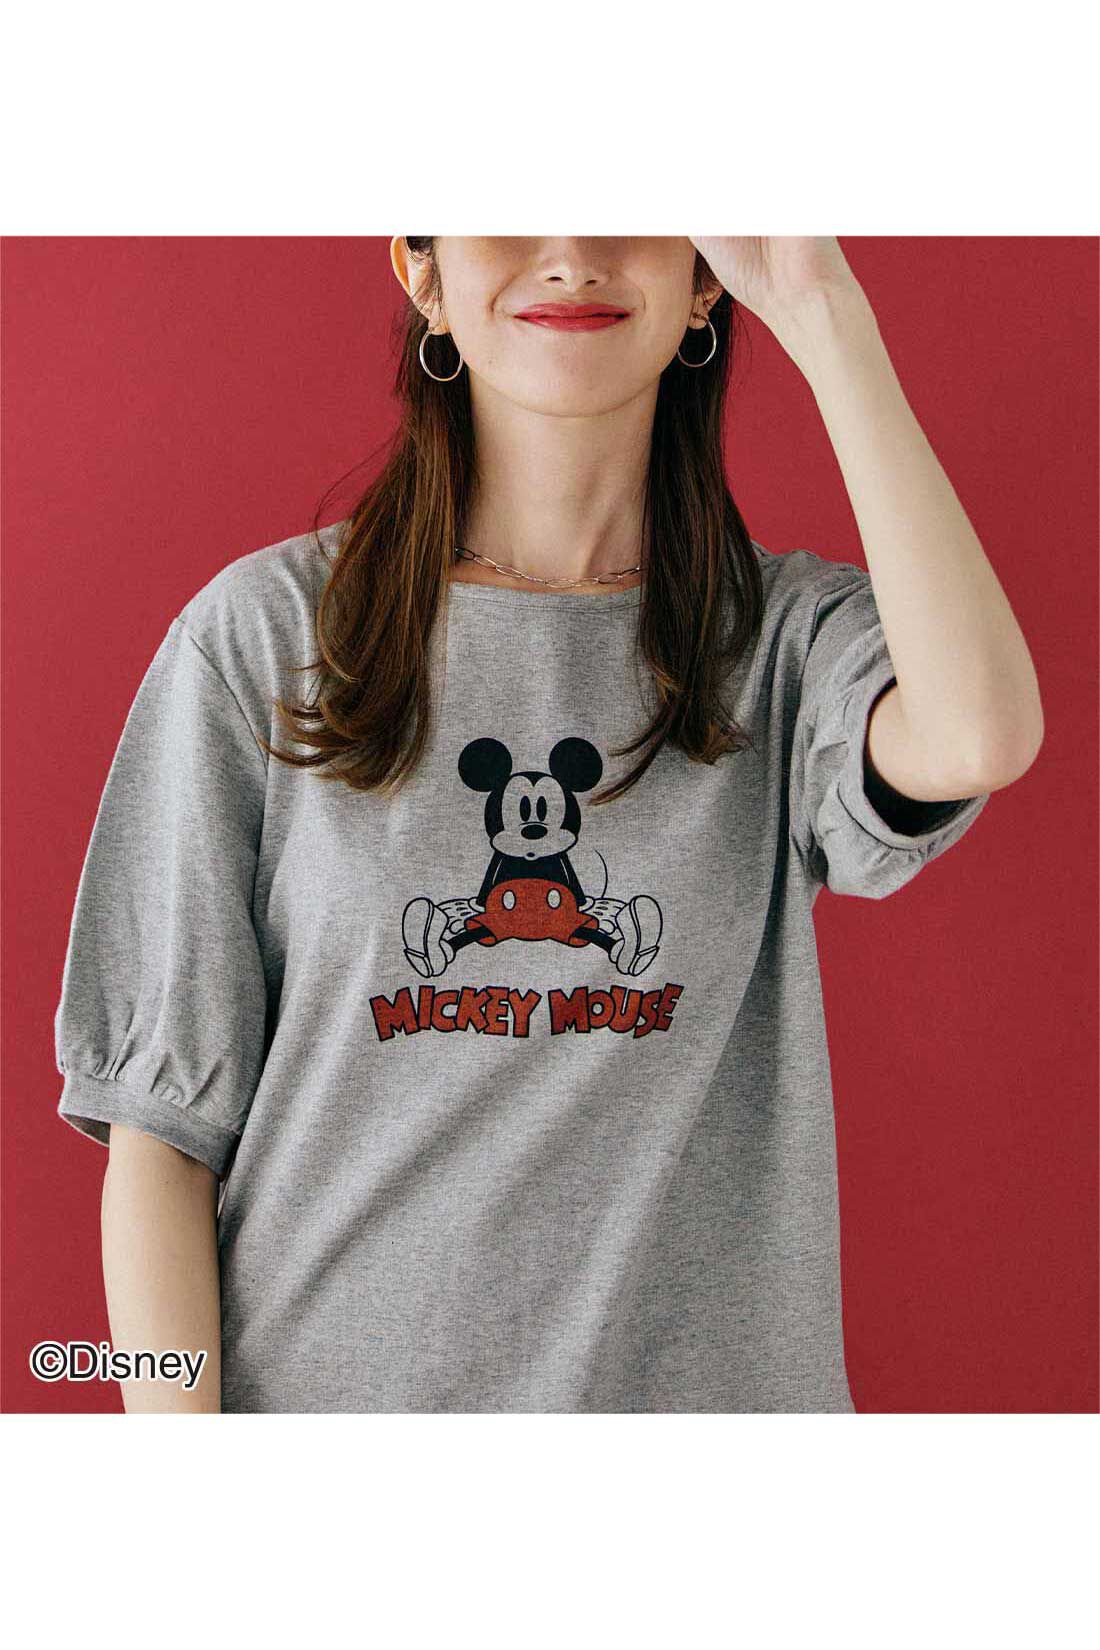 IEDIT|IEDIT[イディット]　Disney 古着風プリントの「ミッキーマウス」パフスリーブTシャツ